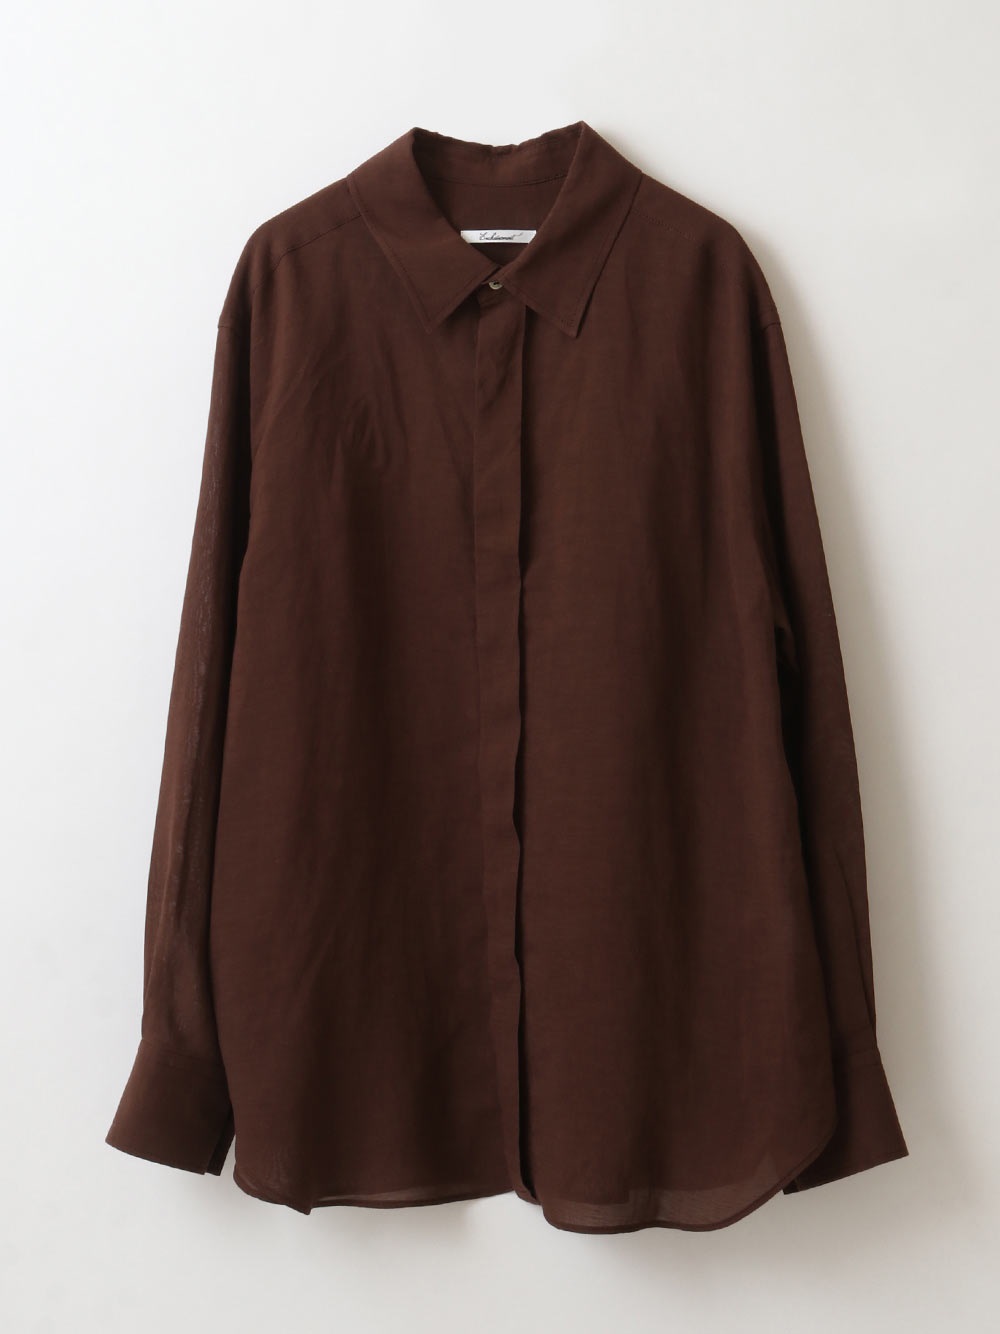 Buttoned Sleeve Shirt(81チャ-フリー)